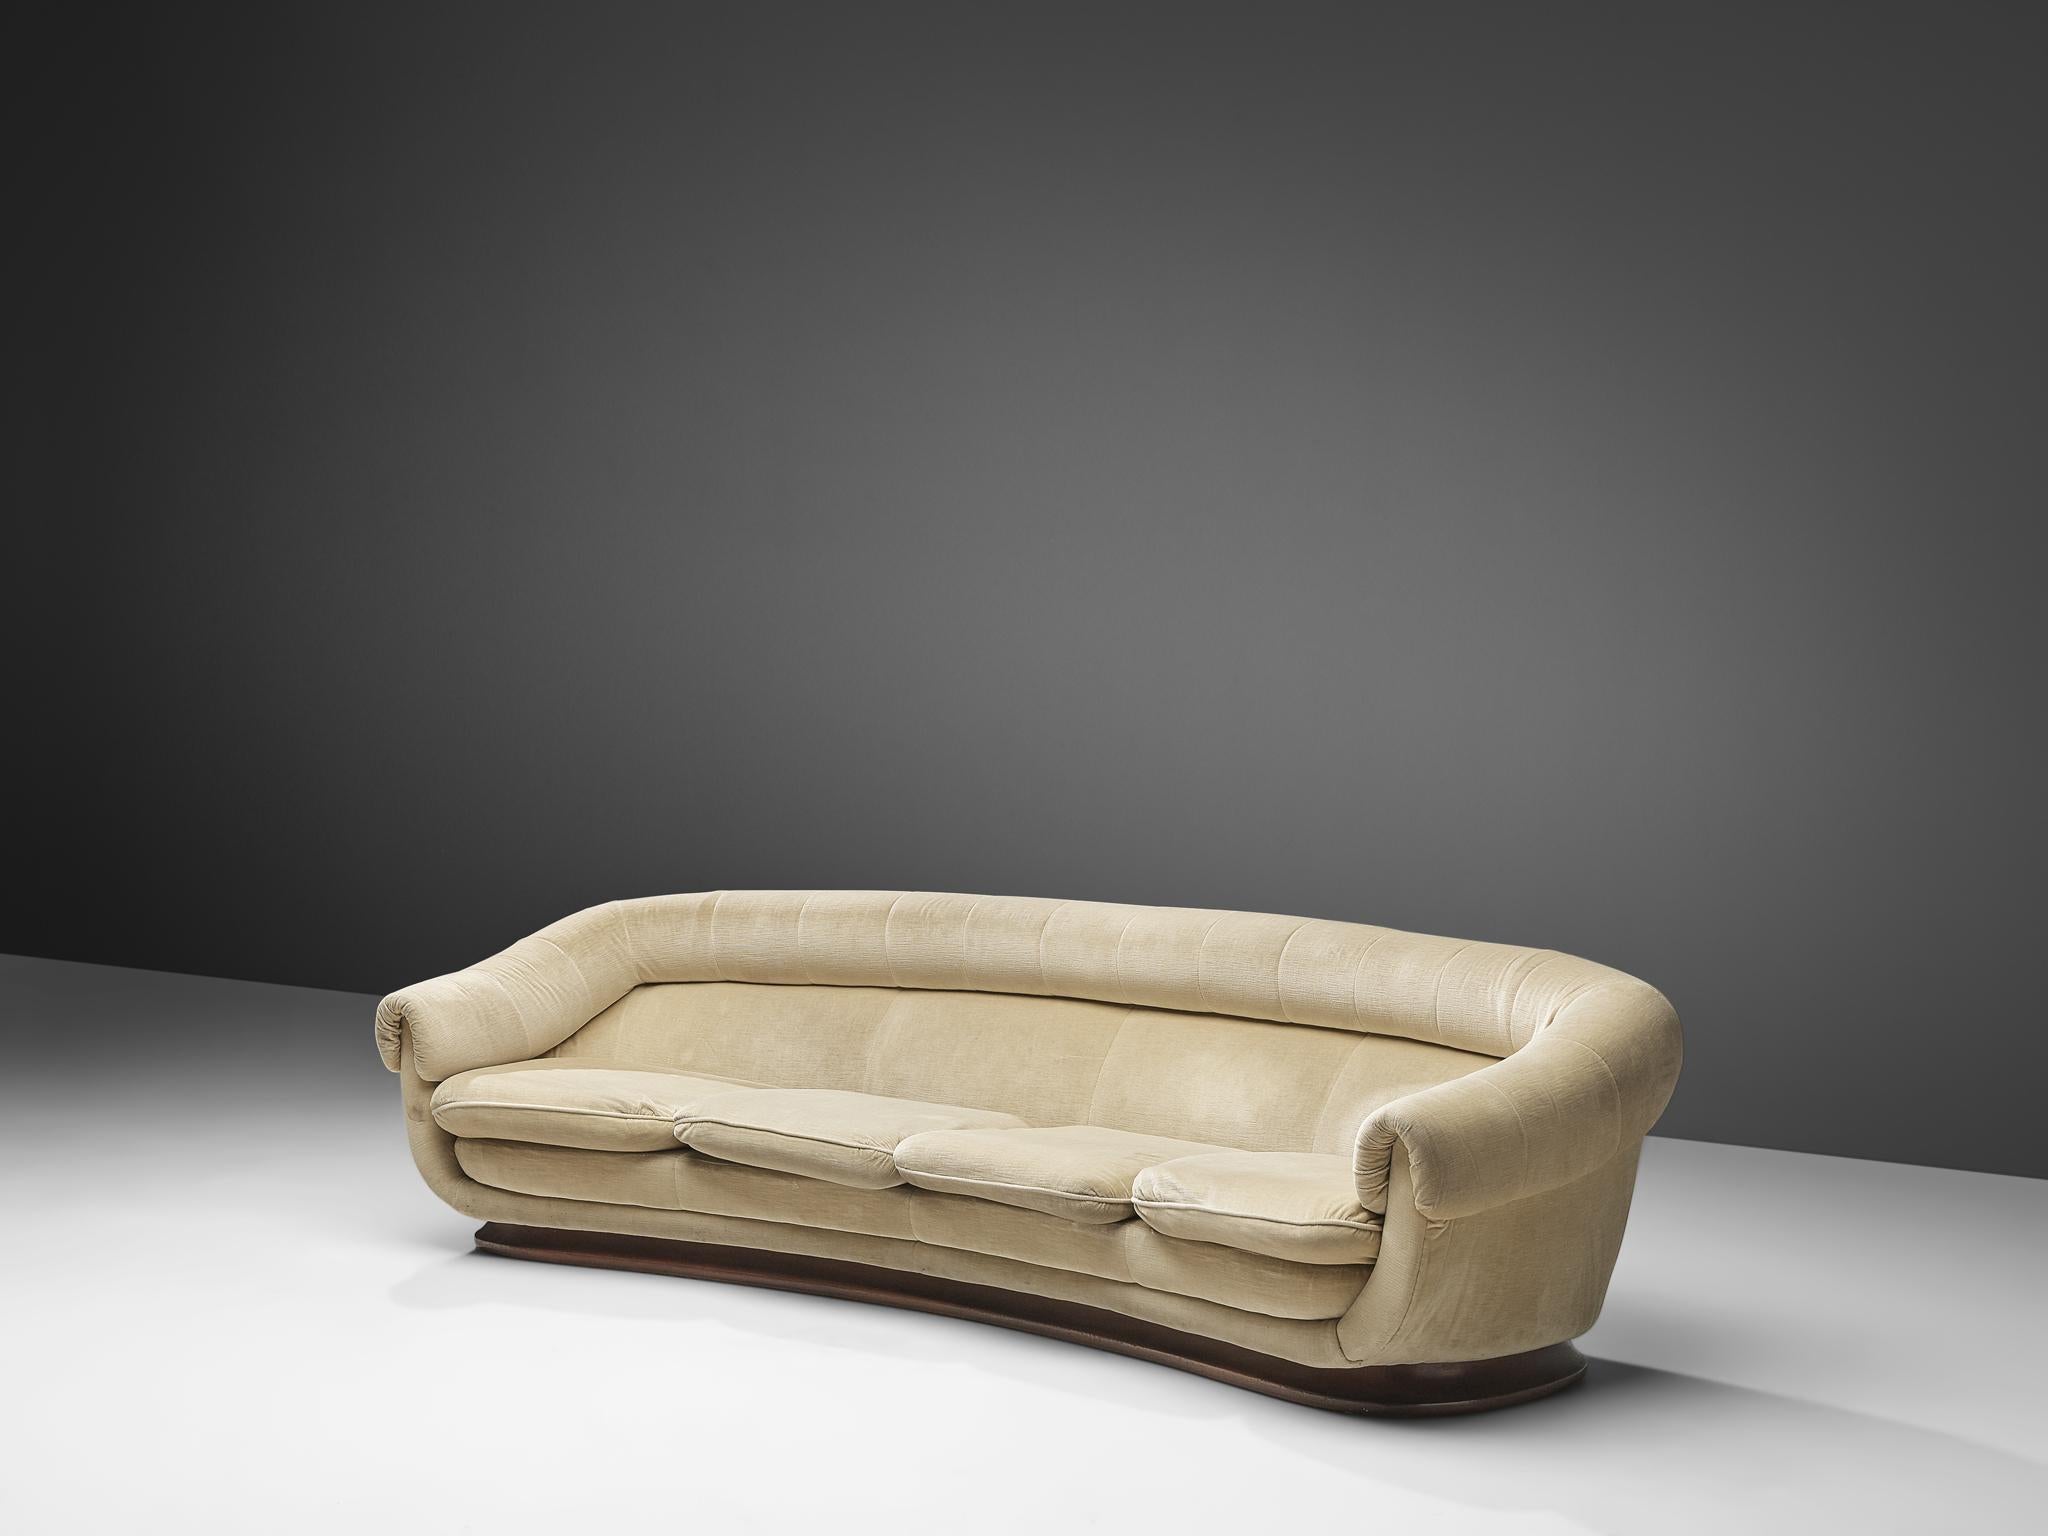 Geschwungenes Sofa, Samtpolsterung, Holz, Italien, 1940er Jahre

Ein wunderschönes geschwungenes Sofa, das in den 1940er Jahren in Italien hergestellt wurde. Dieses Sofa weist mehrere dynamische Merkmale auf, wie zum Beispiel die Form des gesamten